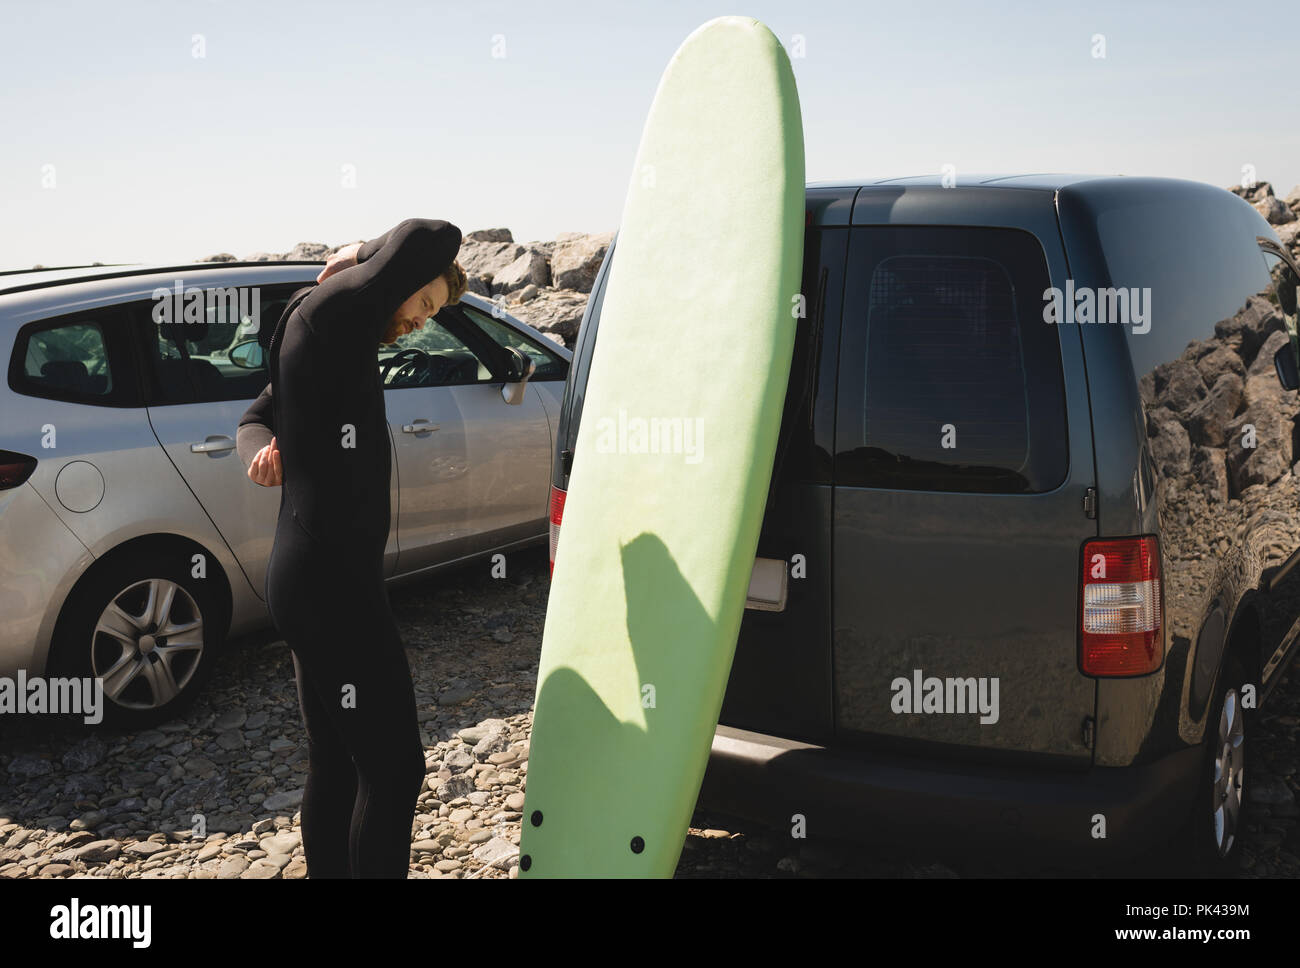 Surfer muta da indossare vicino alla spiaggia Foto Stock